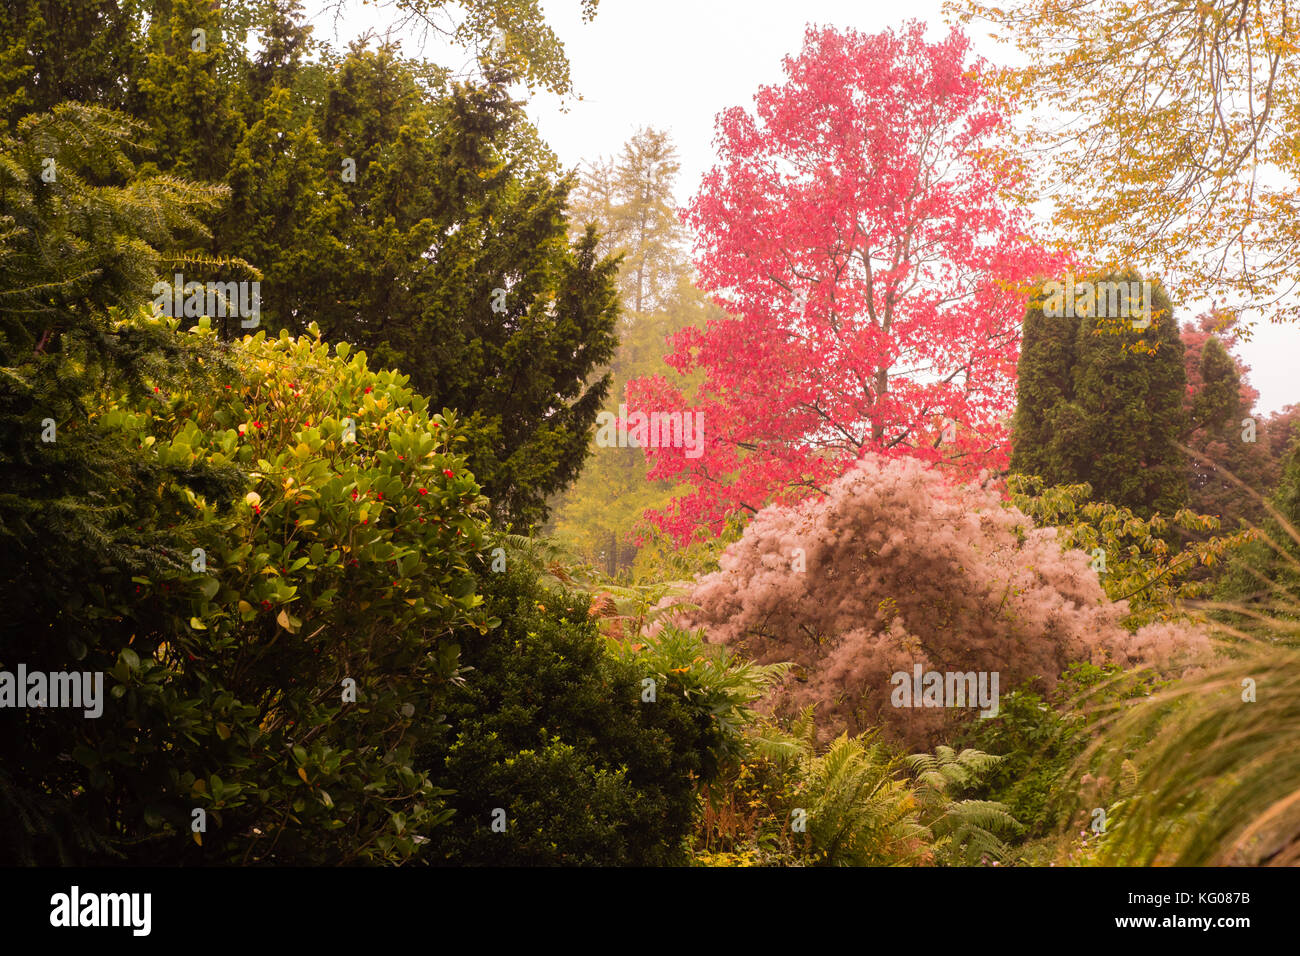 Herbstfarben in Badewanne Botanic Gardens. Bäume und Büsche, die herbstliche Farben Rot, Gelb und Grün im Oktober Vorschüsse in England Stockfoto